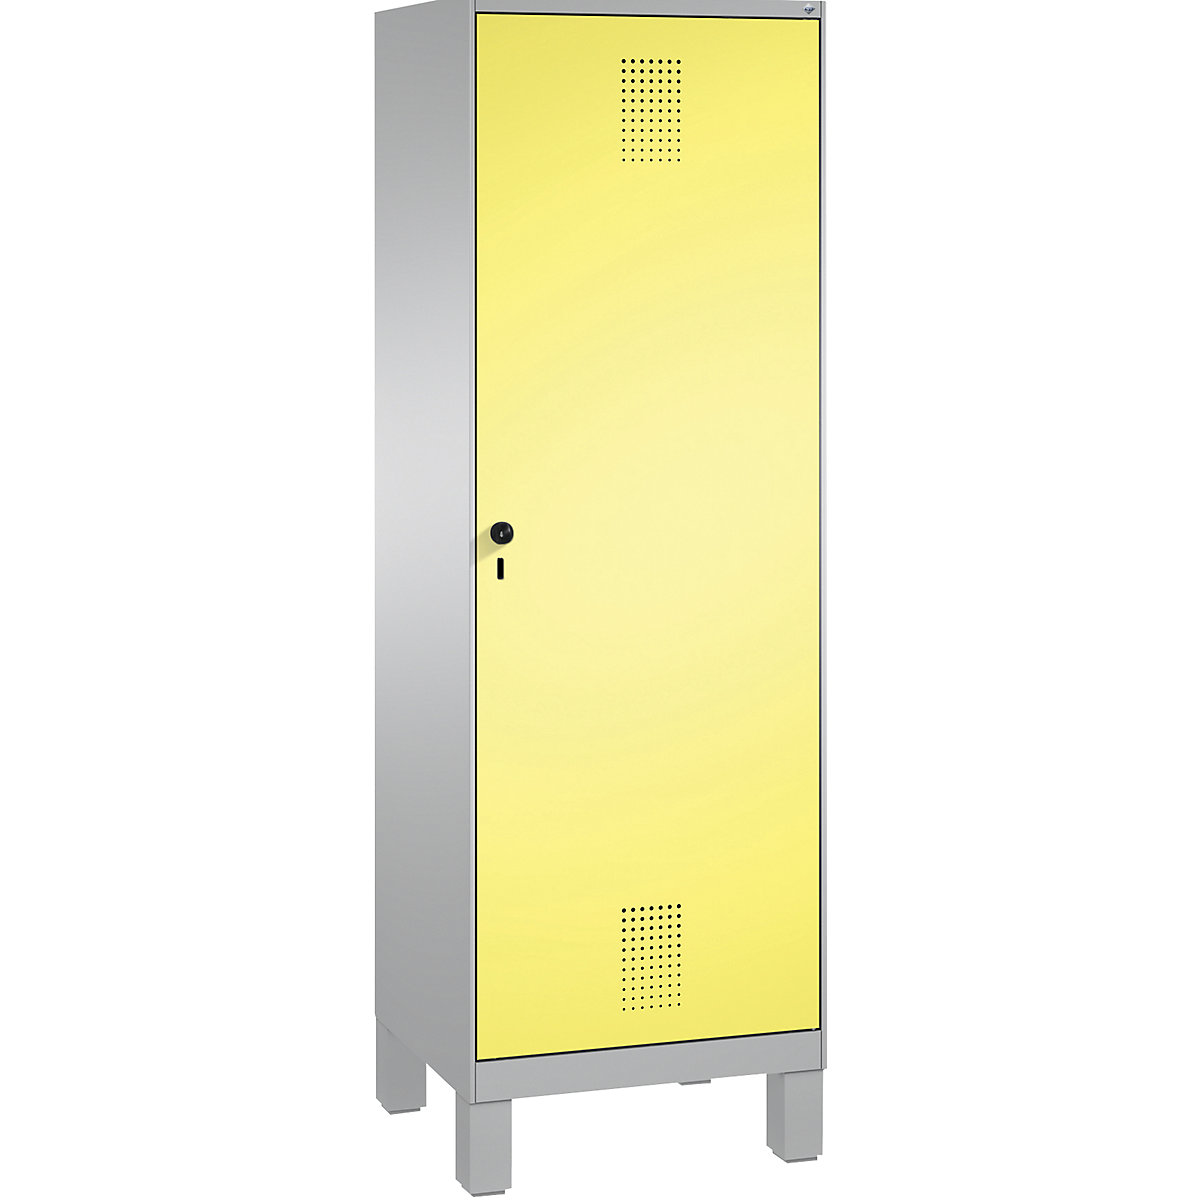 EVOLO öltözőszekrény, ajtó 2 fülke előtt, lábakkal – C+P, 2 fülke, 1 ajtó, fülkeszélesség 300 mm, fehéralumínium / kénsárga-16